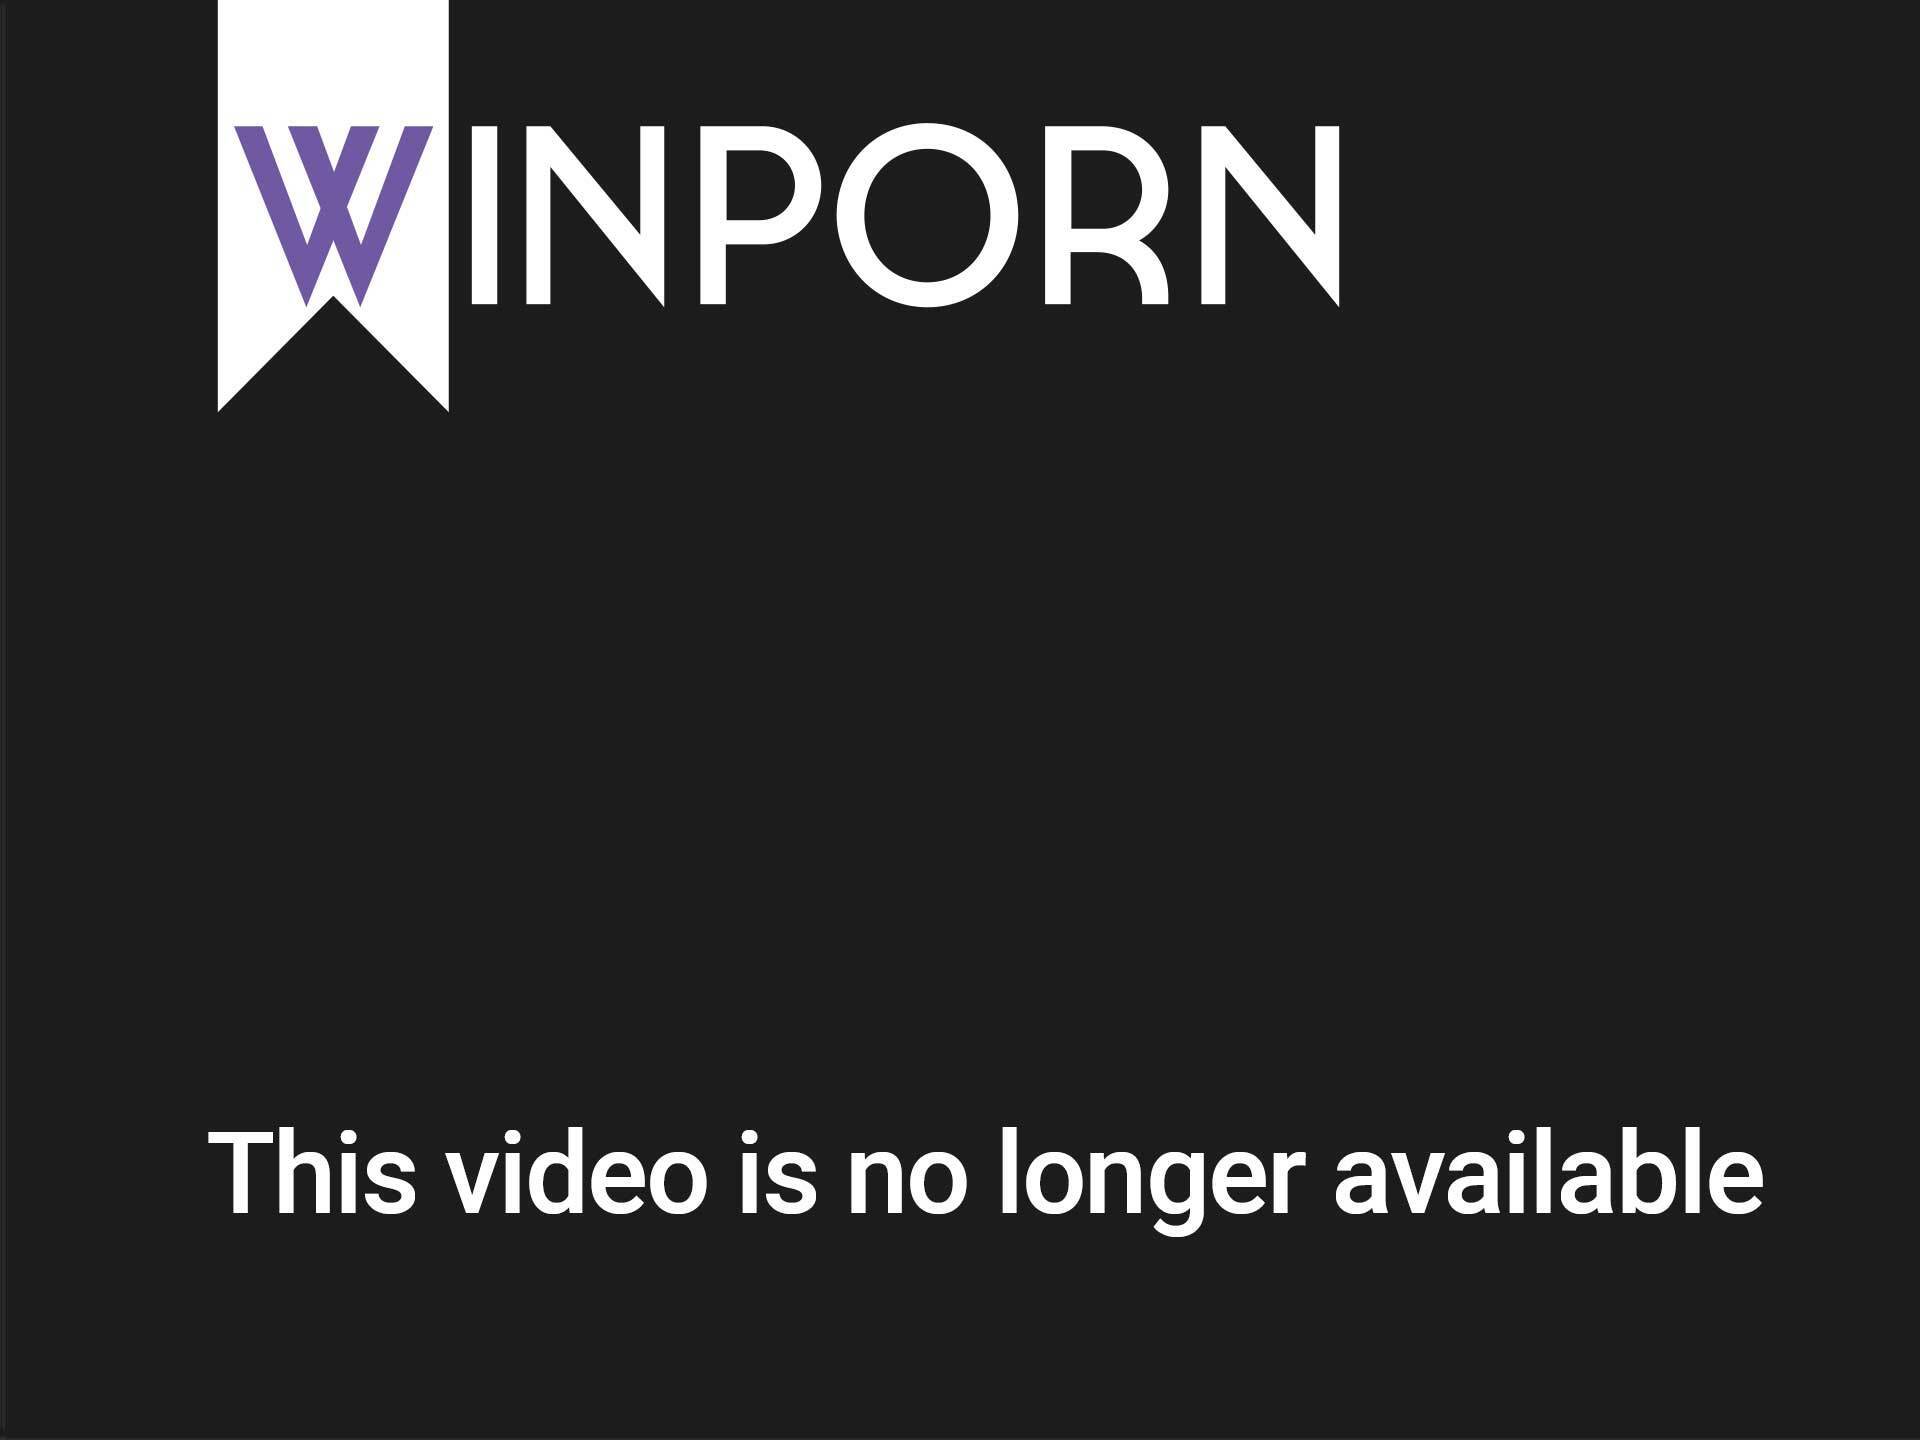 Sexvedio Dunlod - Download Mobile Porn Videos - Beautiful Lesbian Bombshells Unforgettable Sex  Video - 1682192 - WinPorn.com